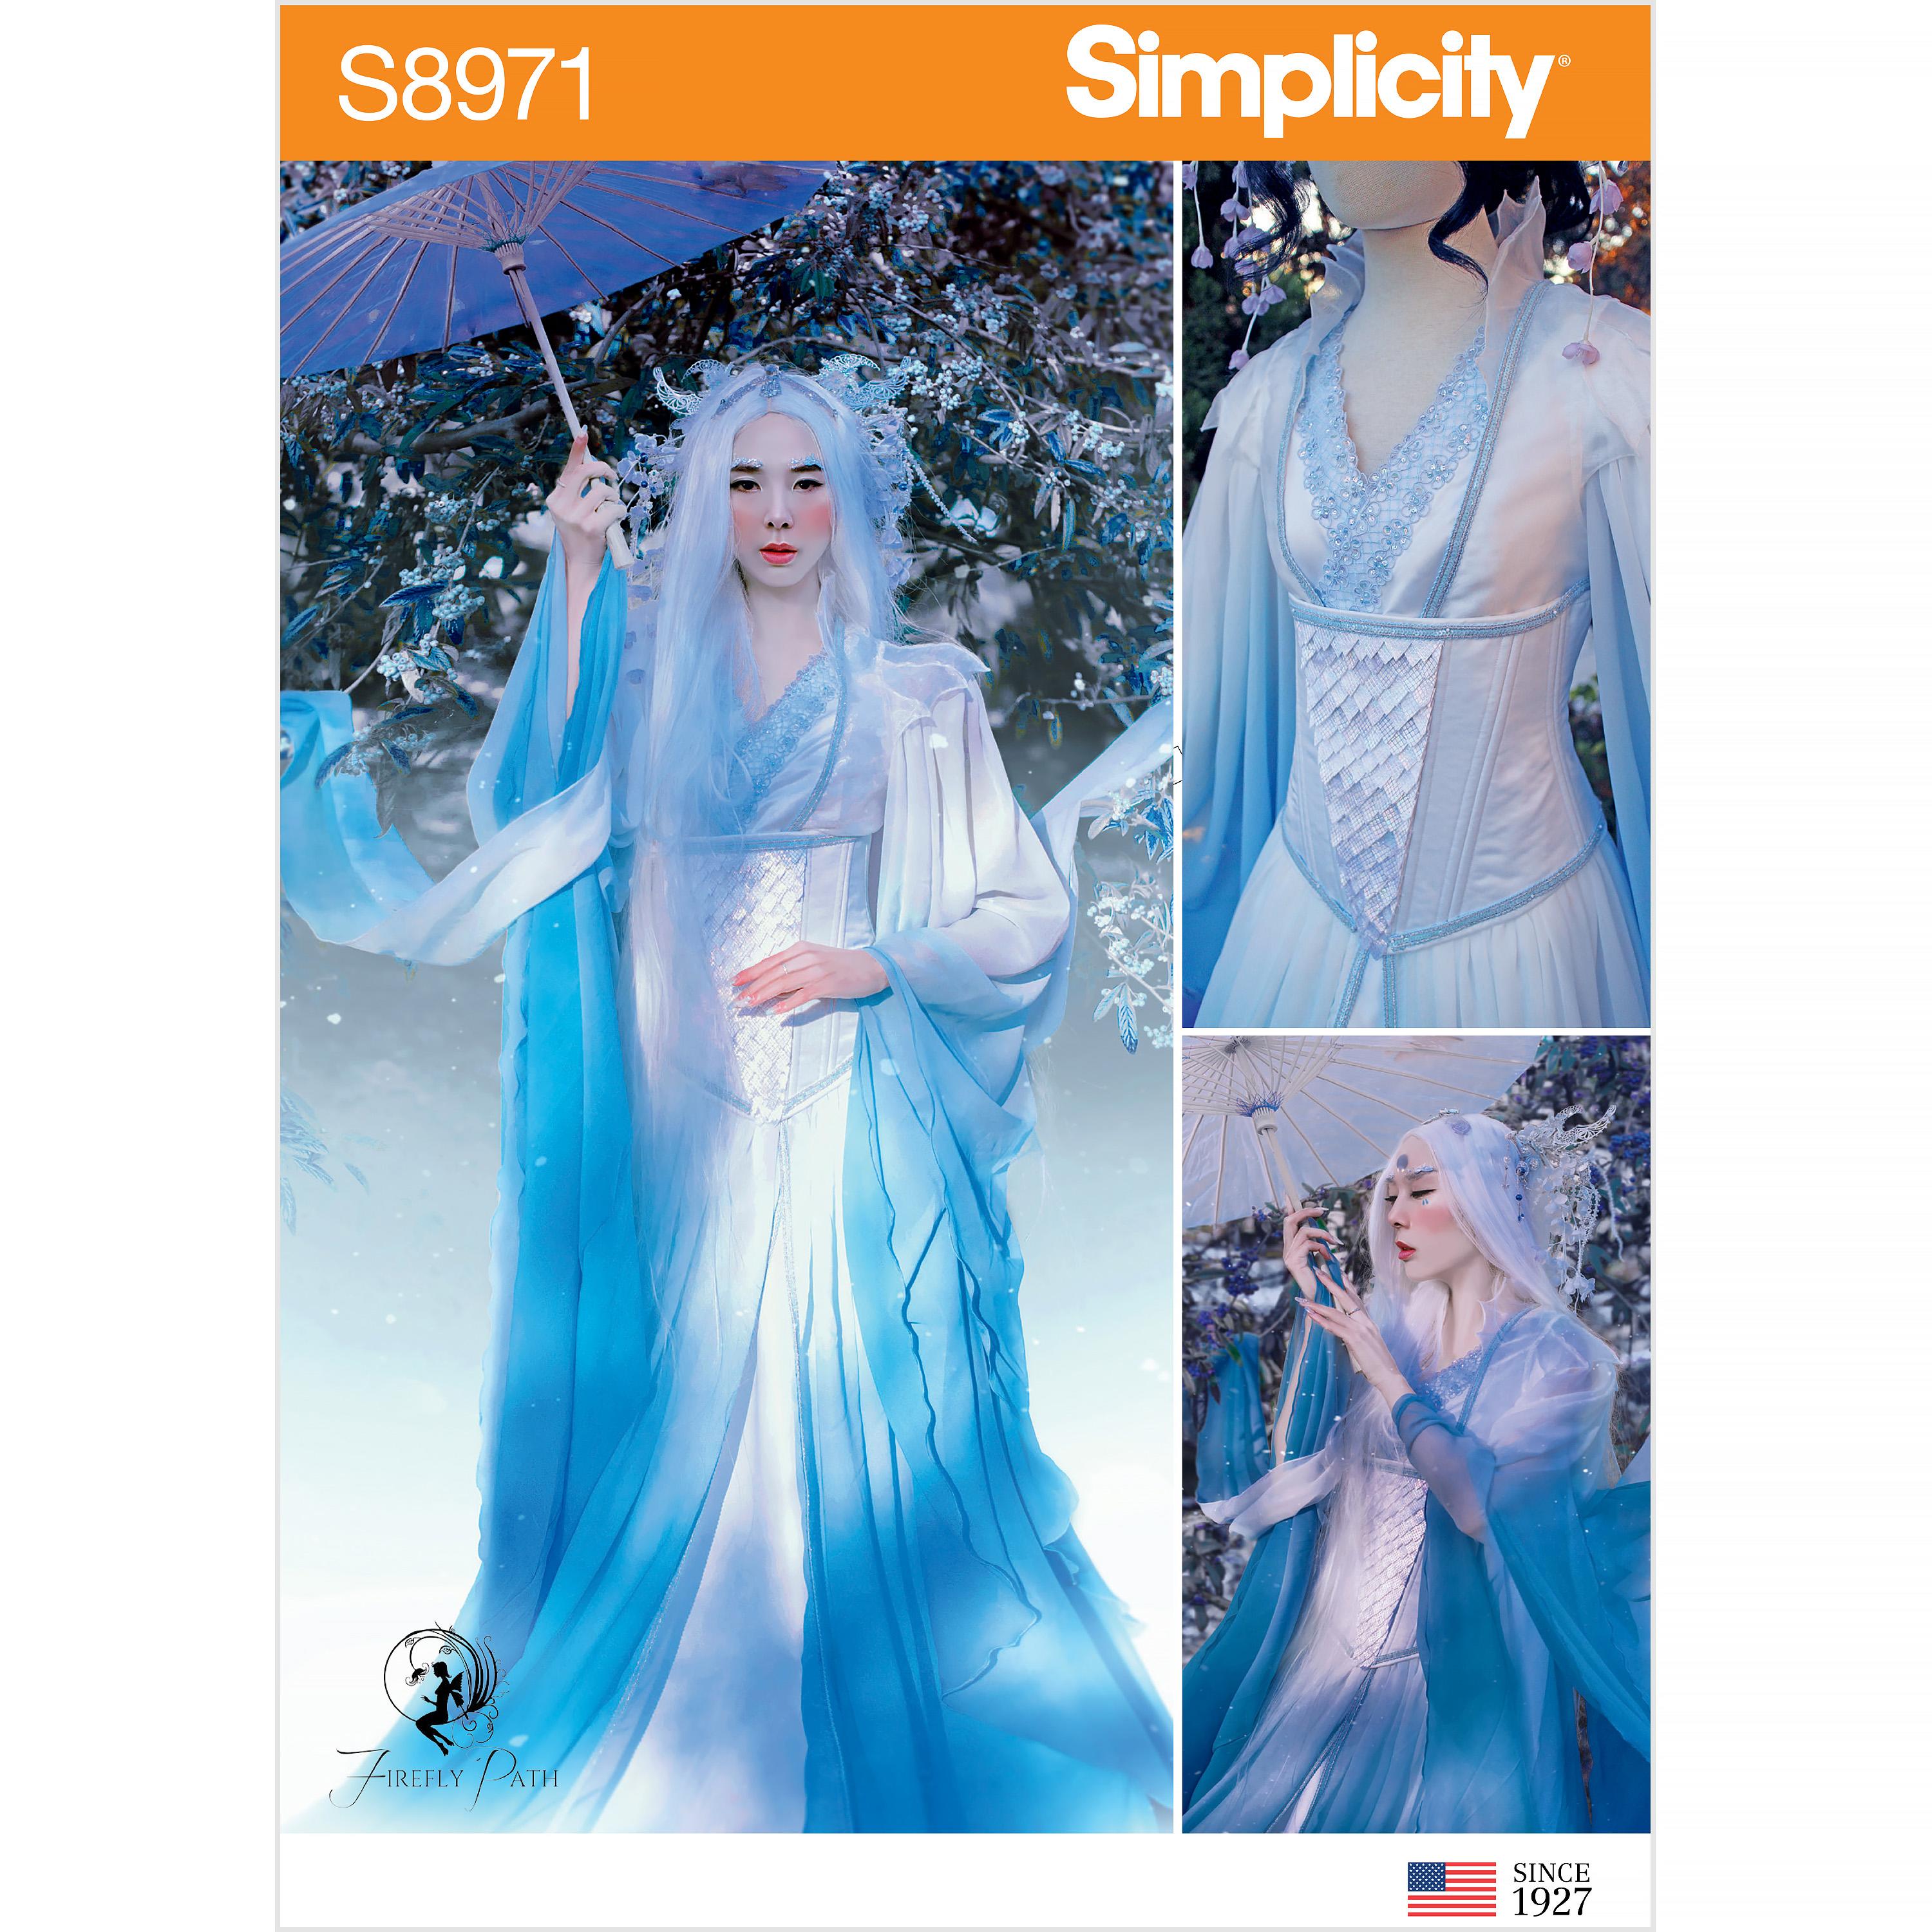 Simplicity S8971 Misses' Fantasy Costume